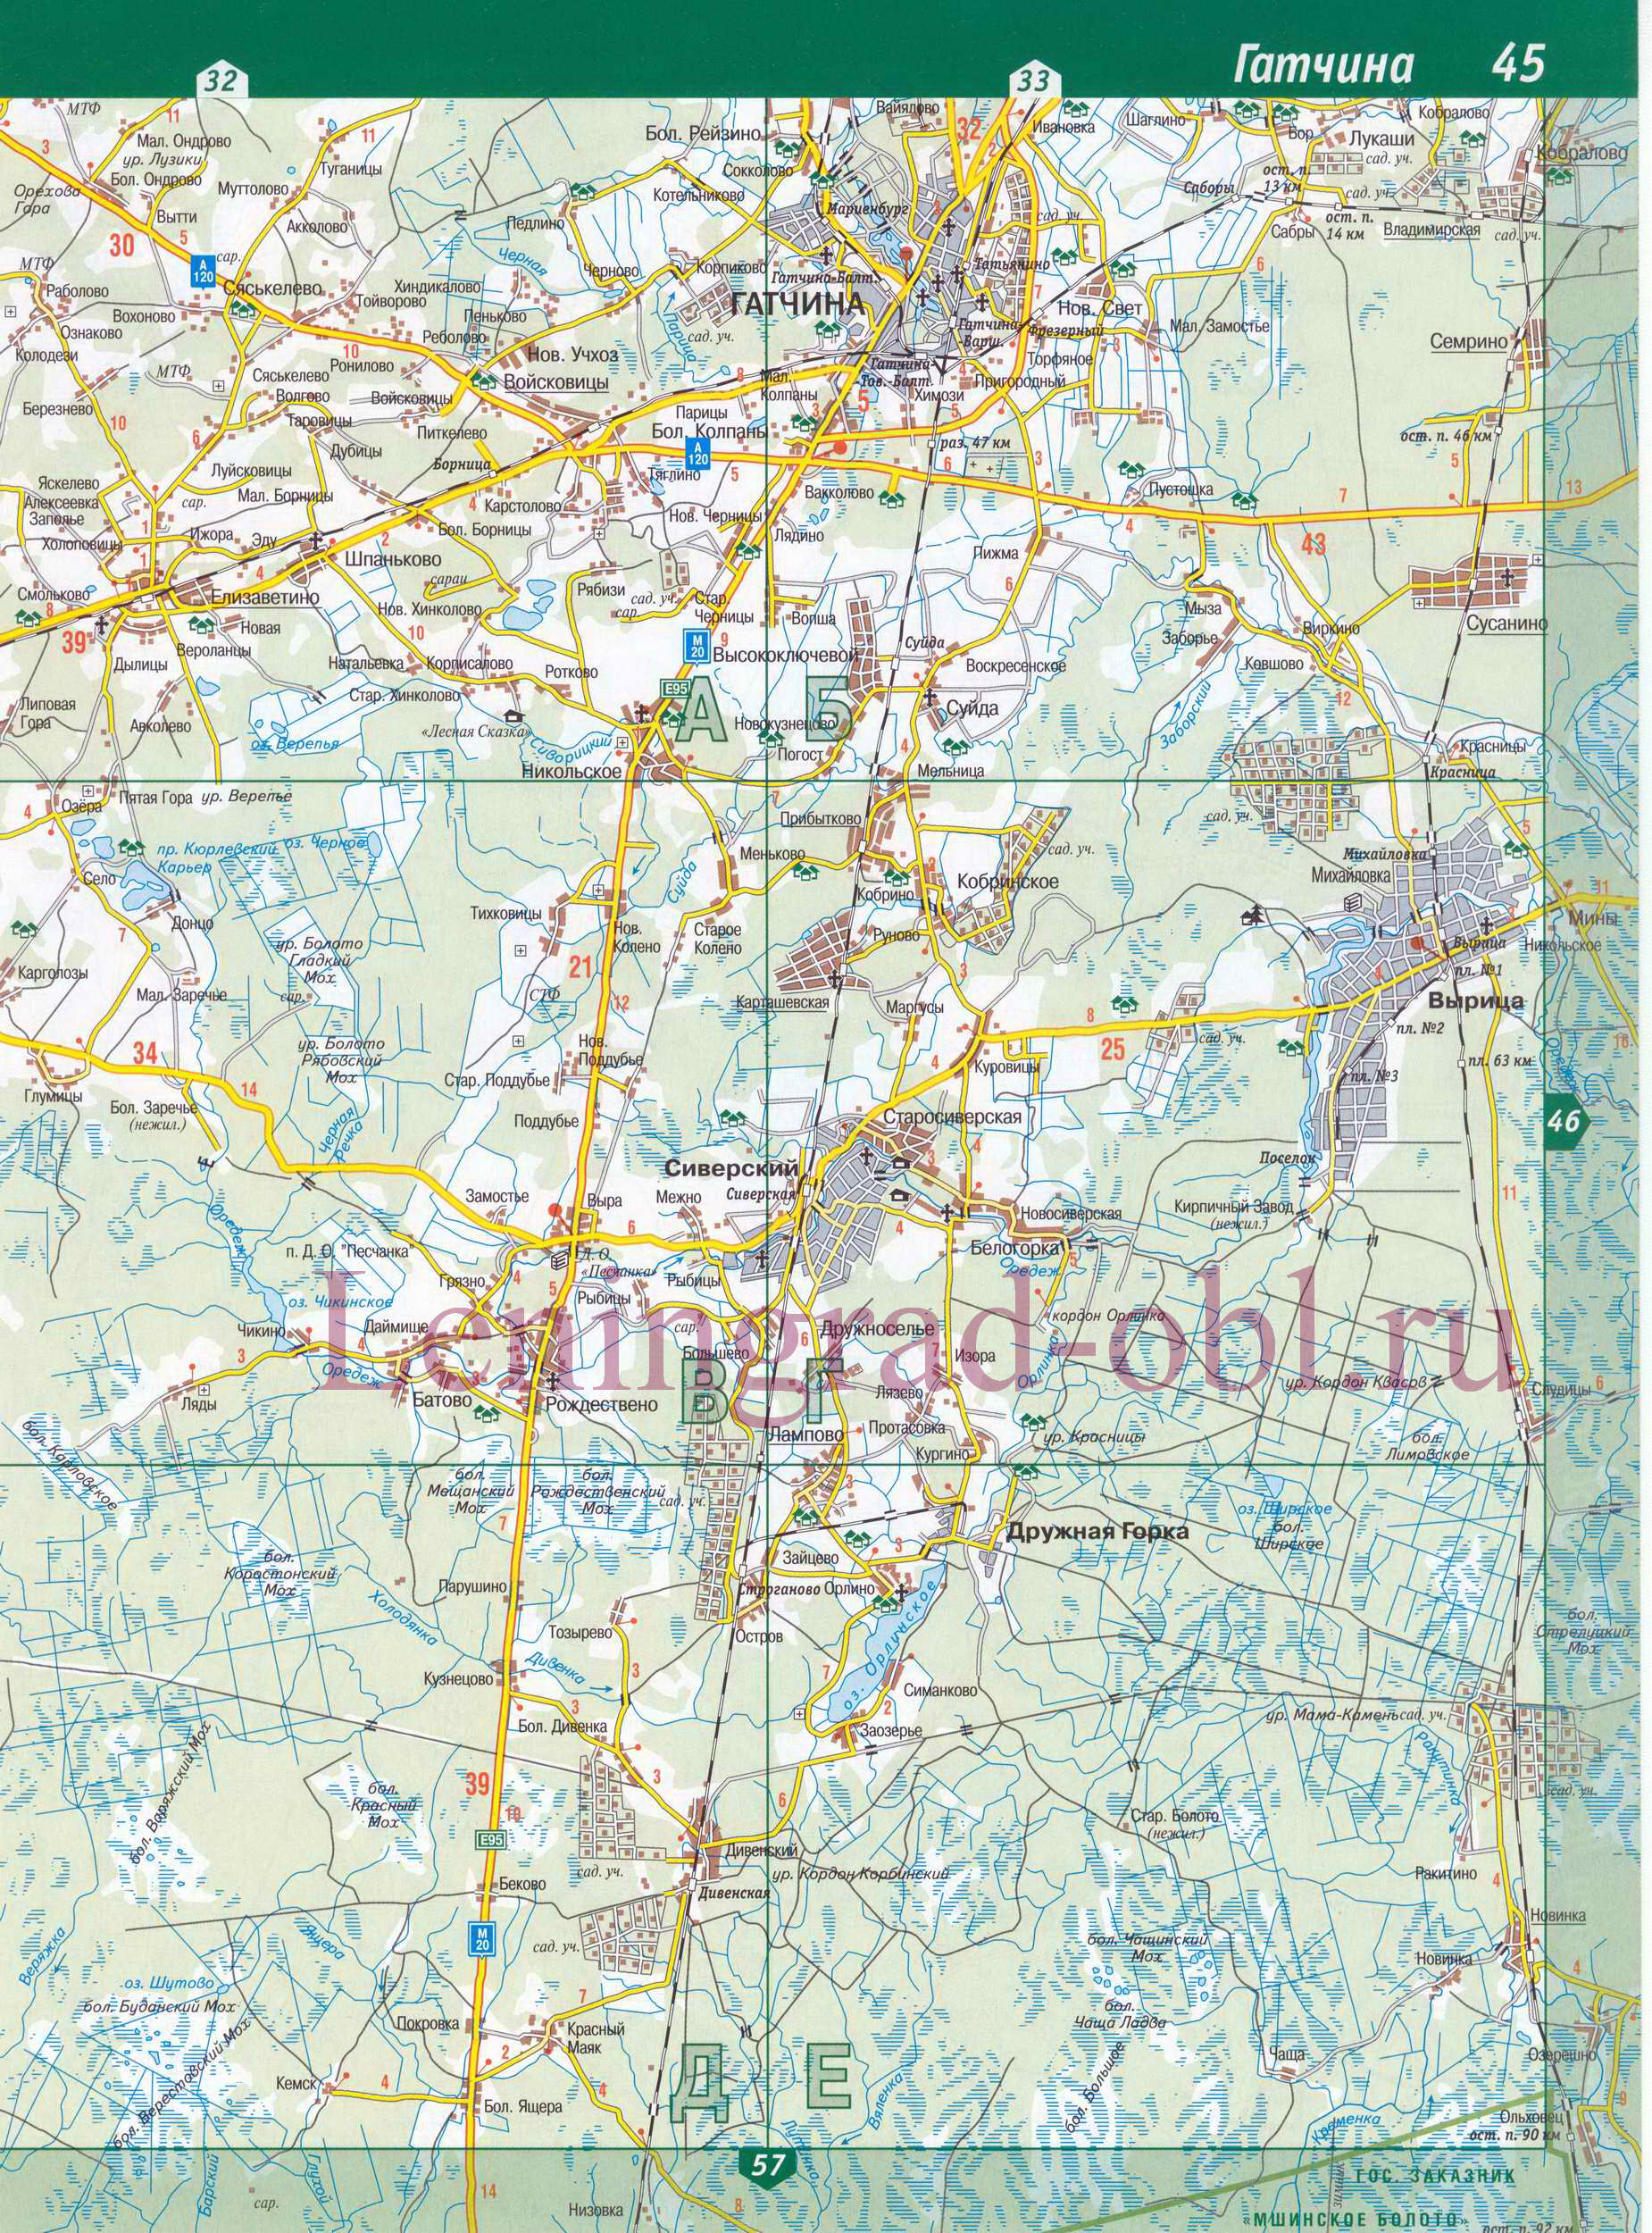 Карта автодорог гатчинского района масштаба 1см:2км